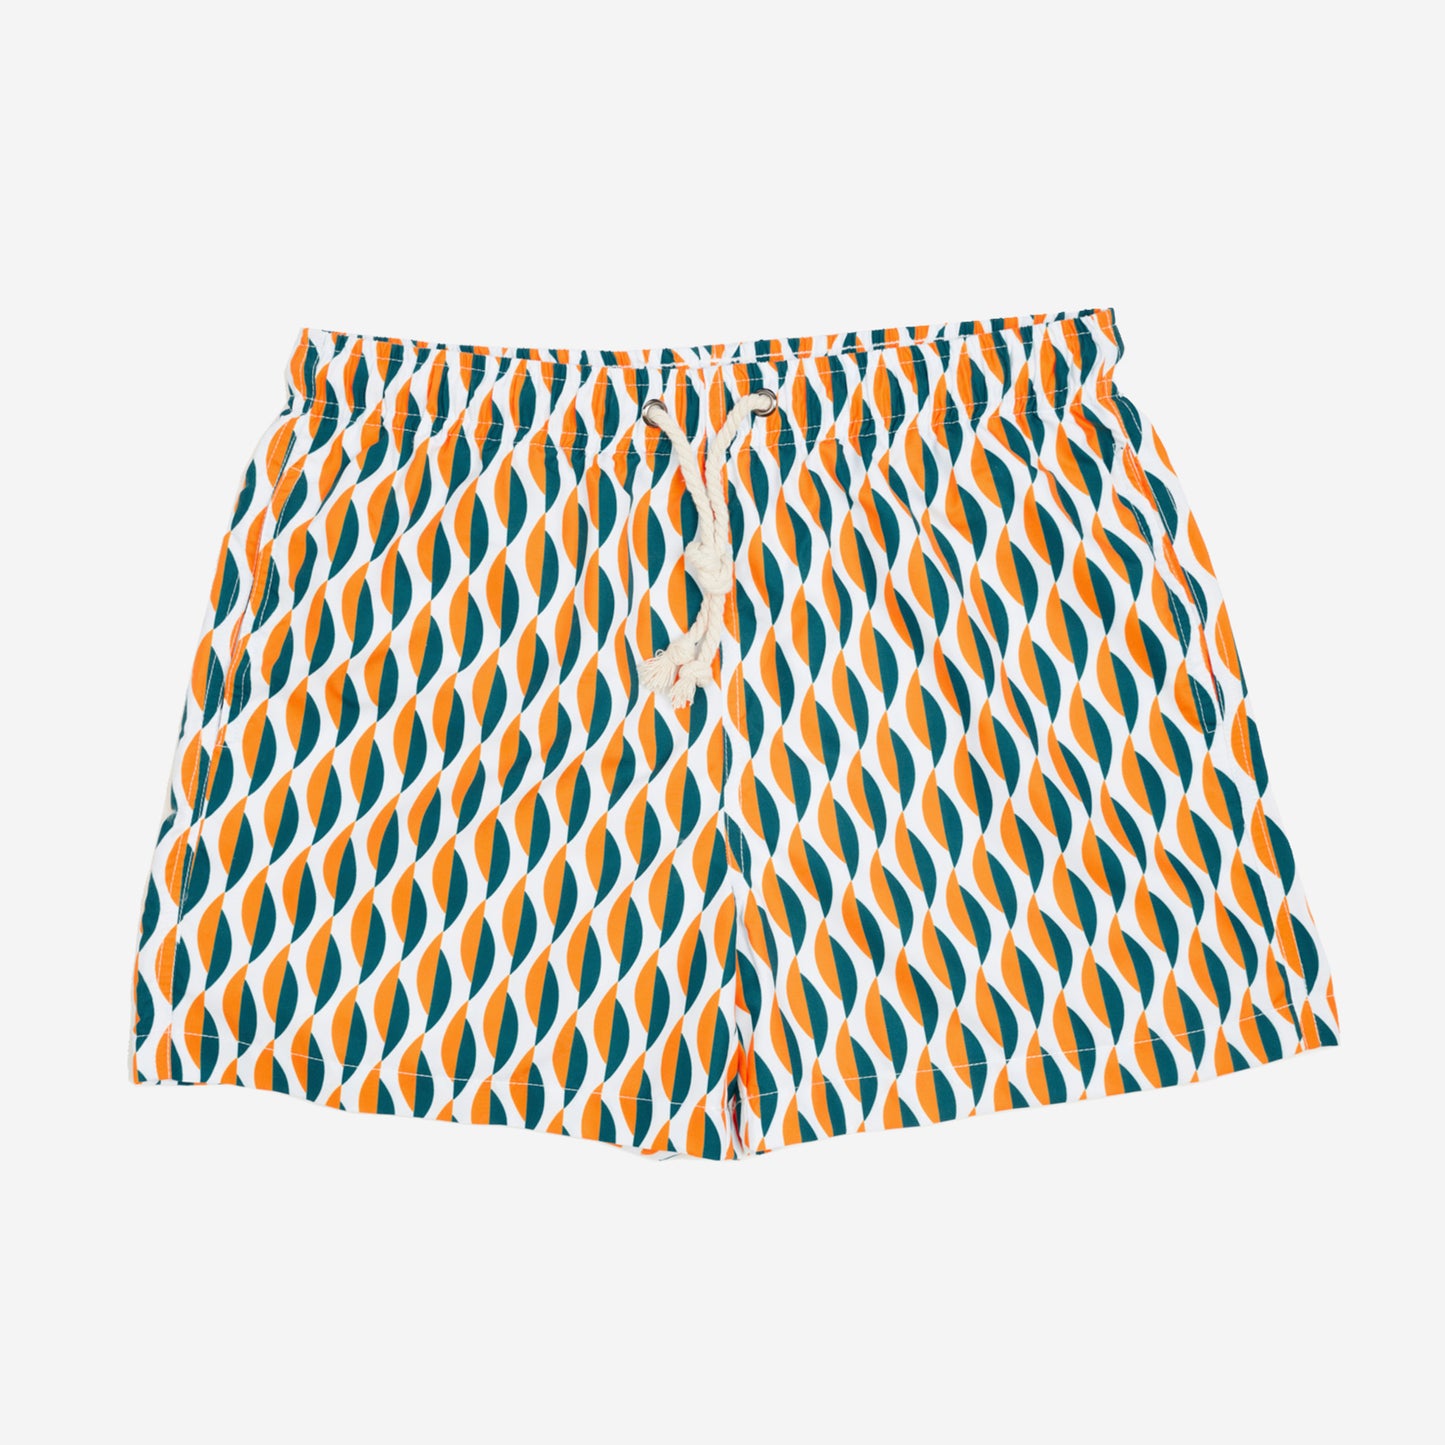 Sustainable Men's Swimsuit - Sestri Levante Orange